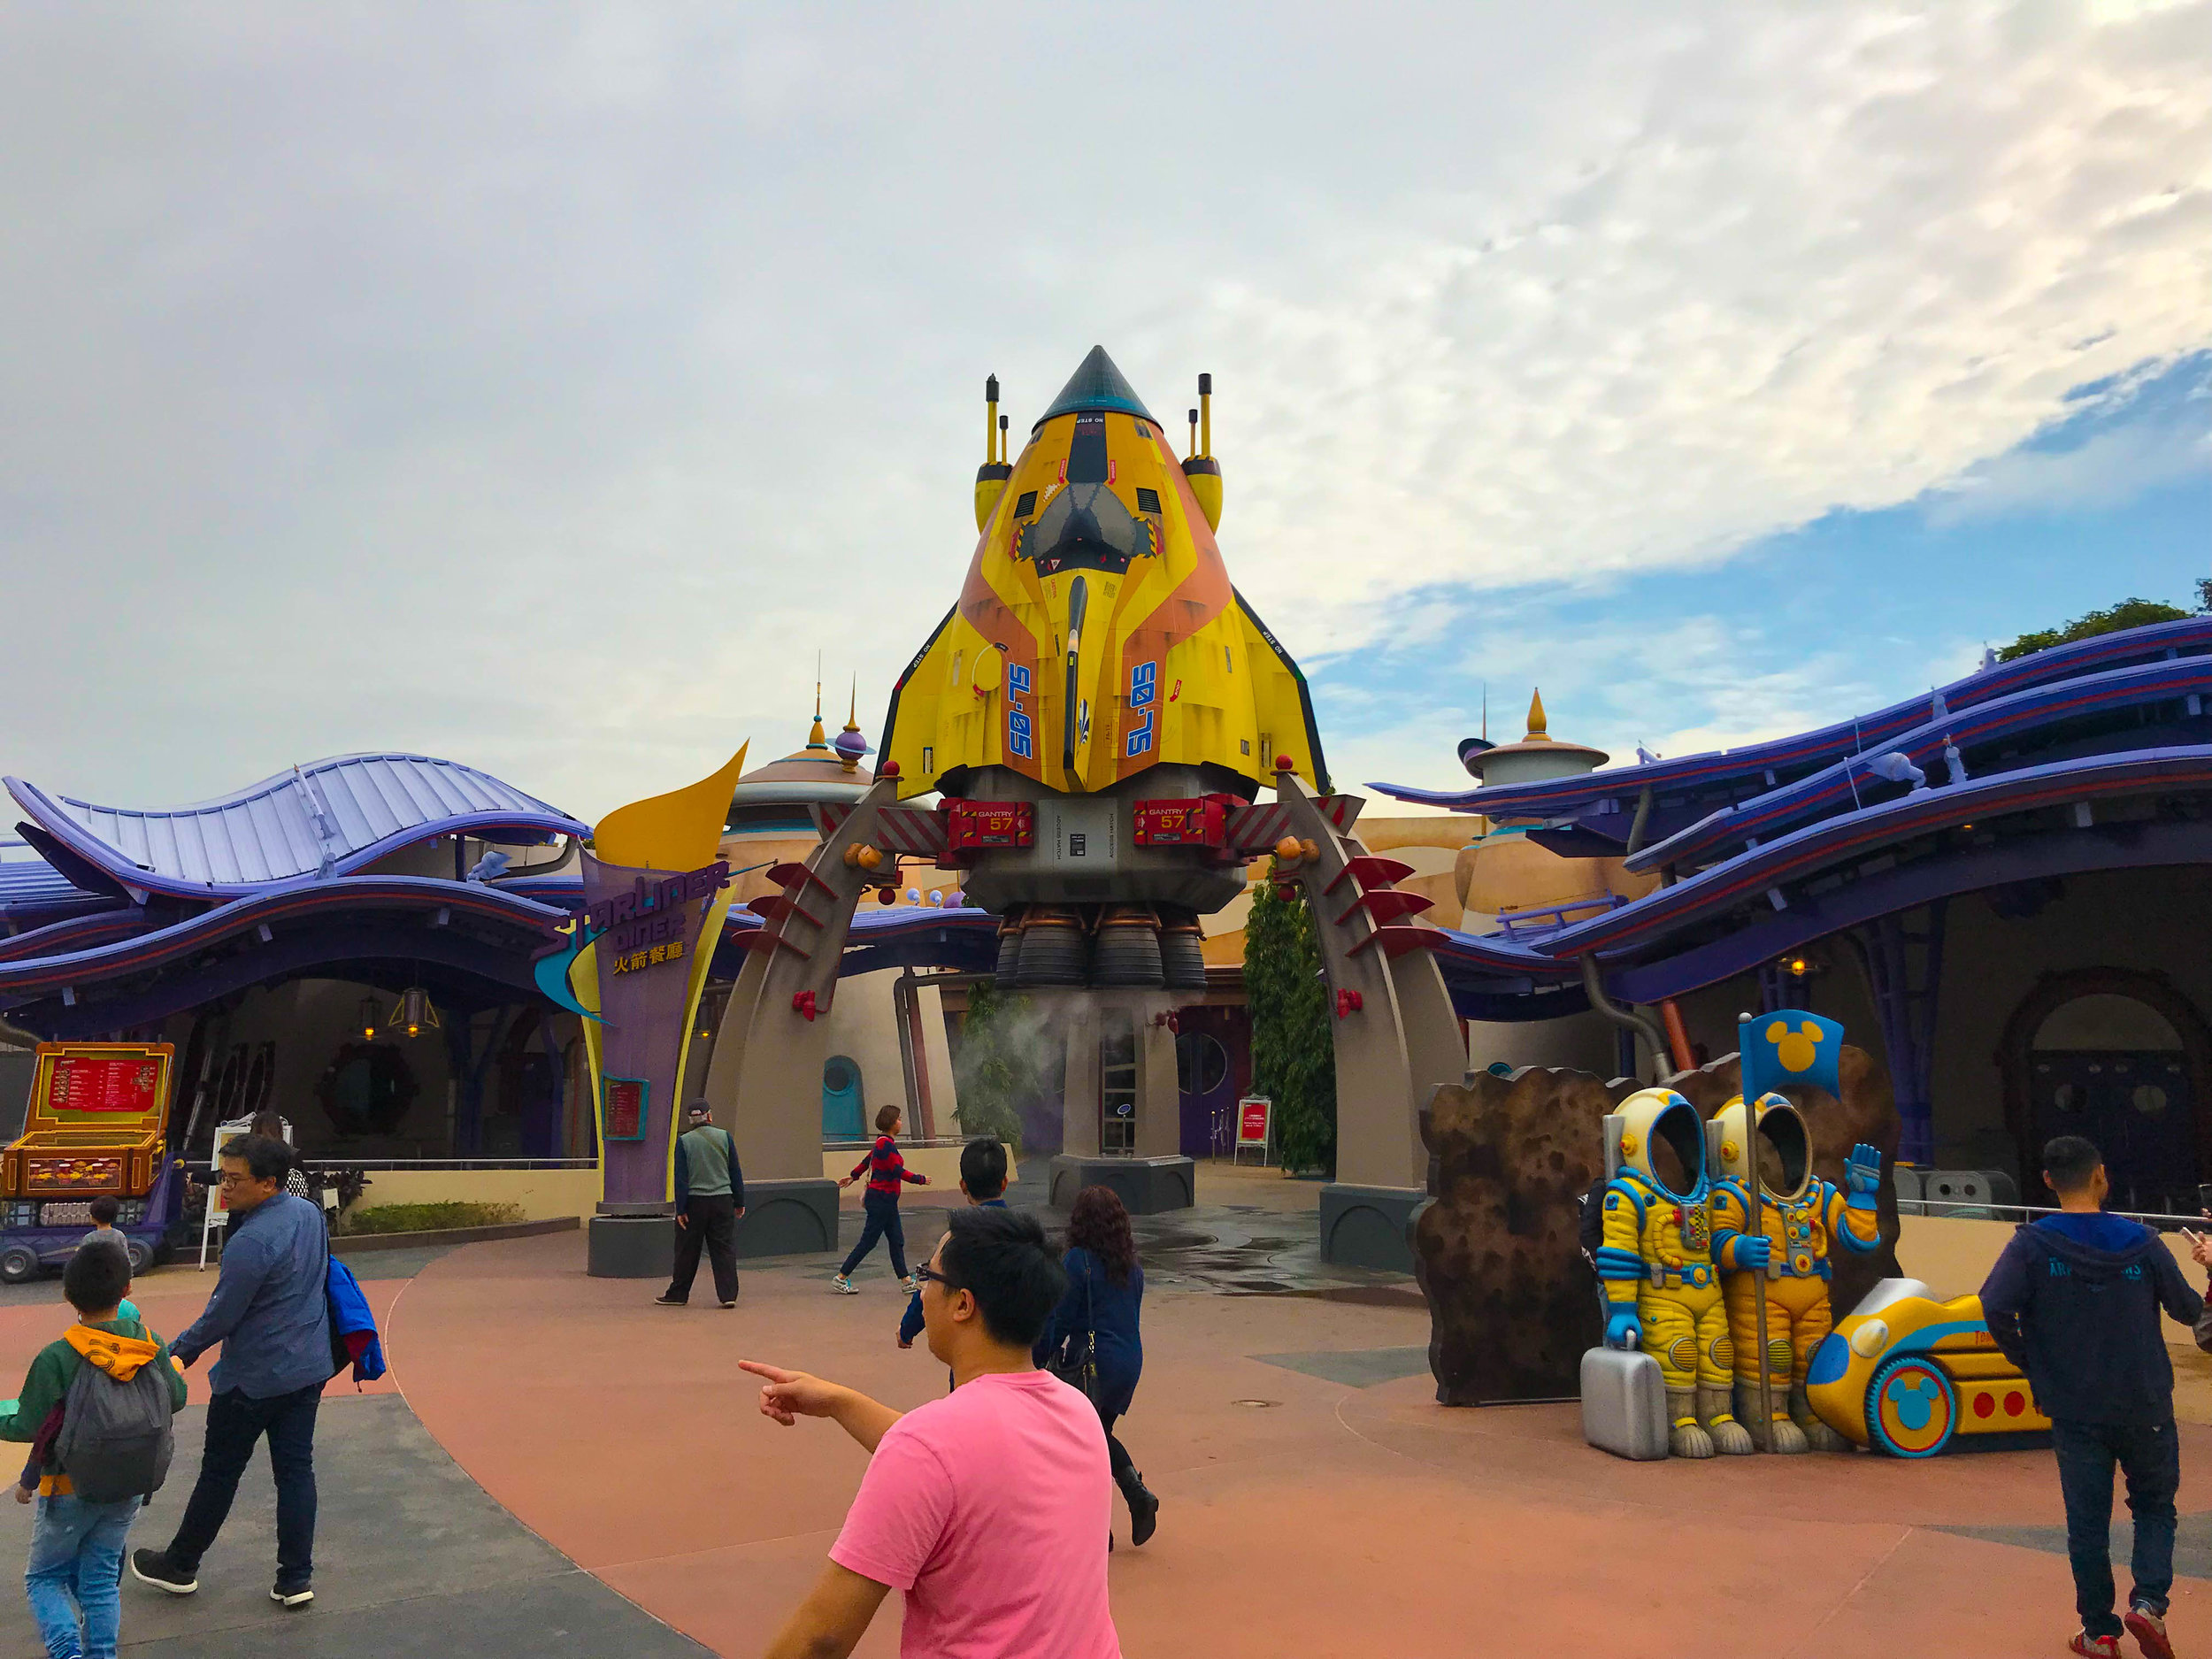 Hong Kong Disneyland Tomorrowland